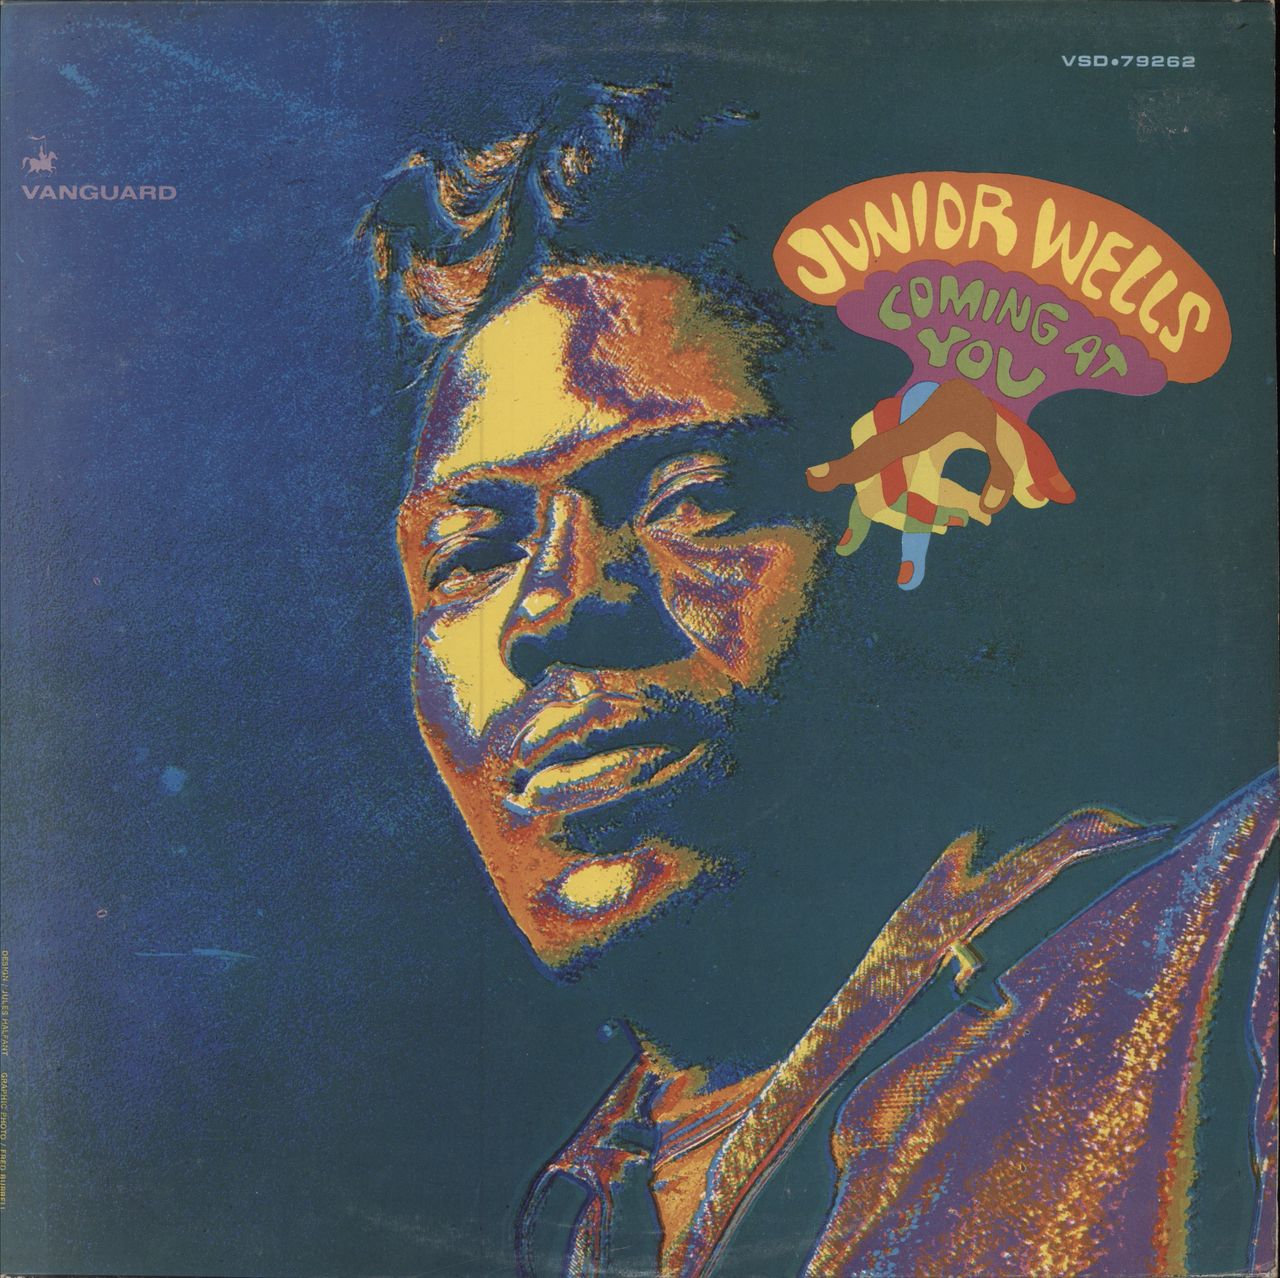 Junior Wells Coming At You - EX UK vinyl LP album (LP record) VSD79262